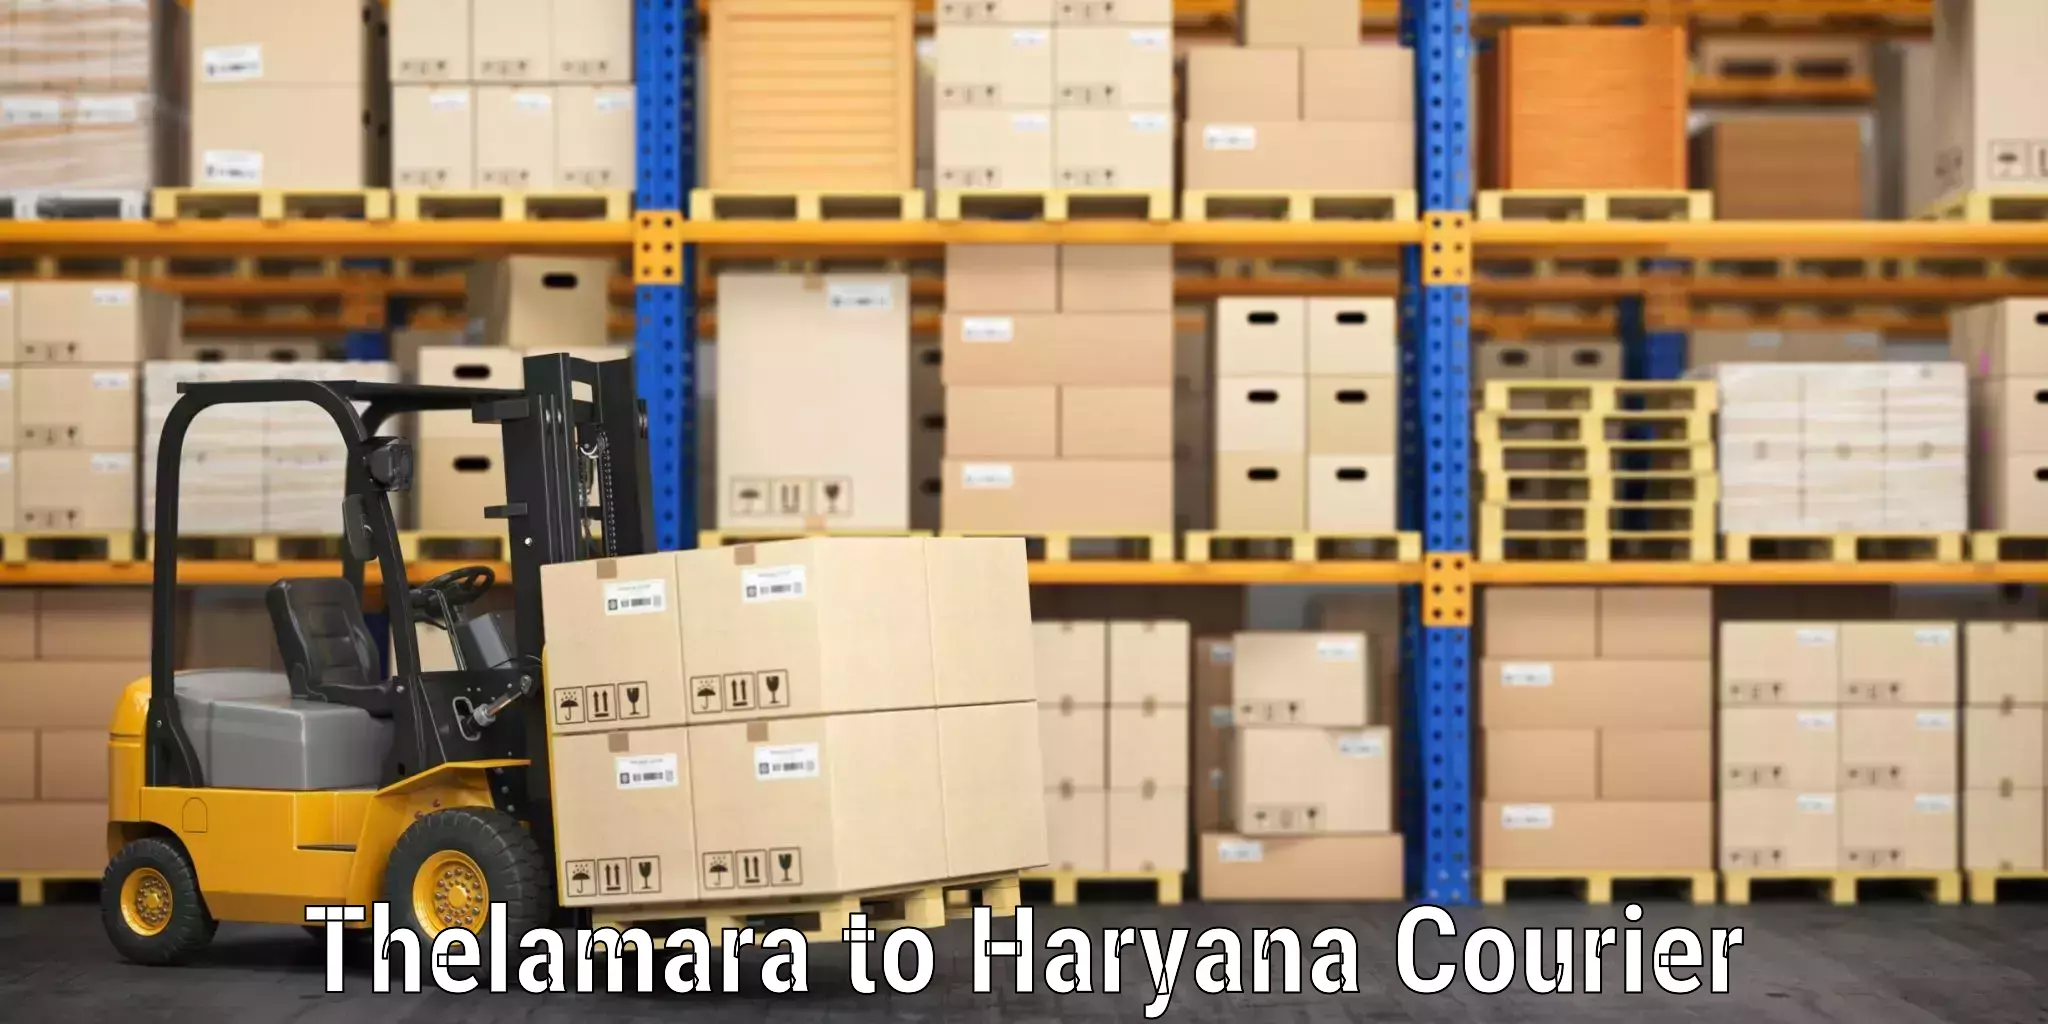 Hassle-free luggage shipping Thelamara to Gurgaon